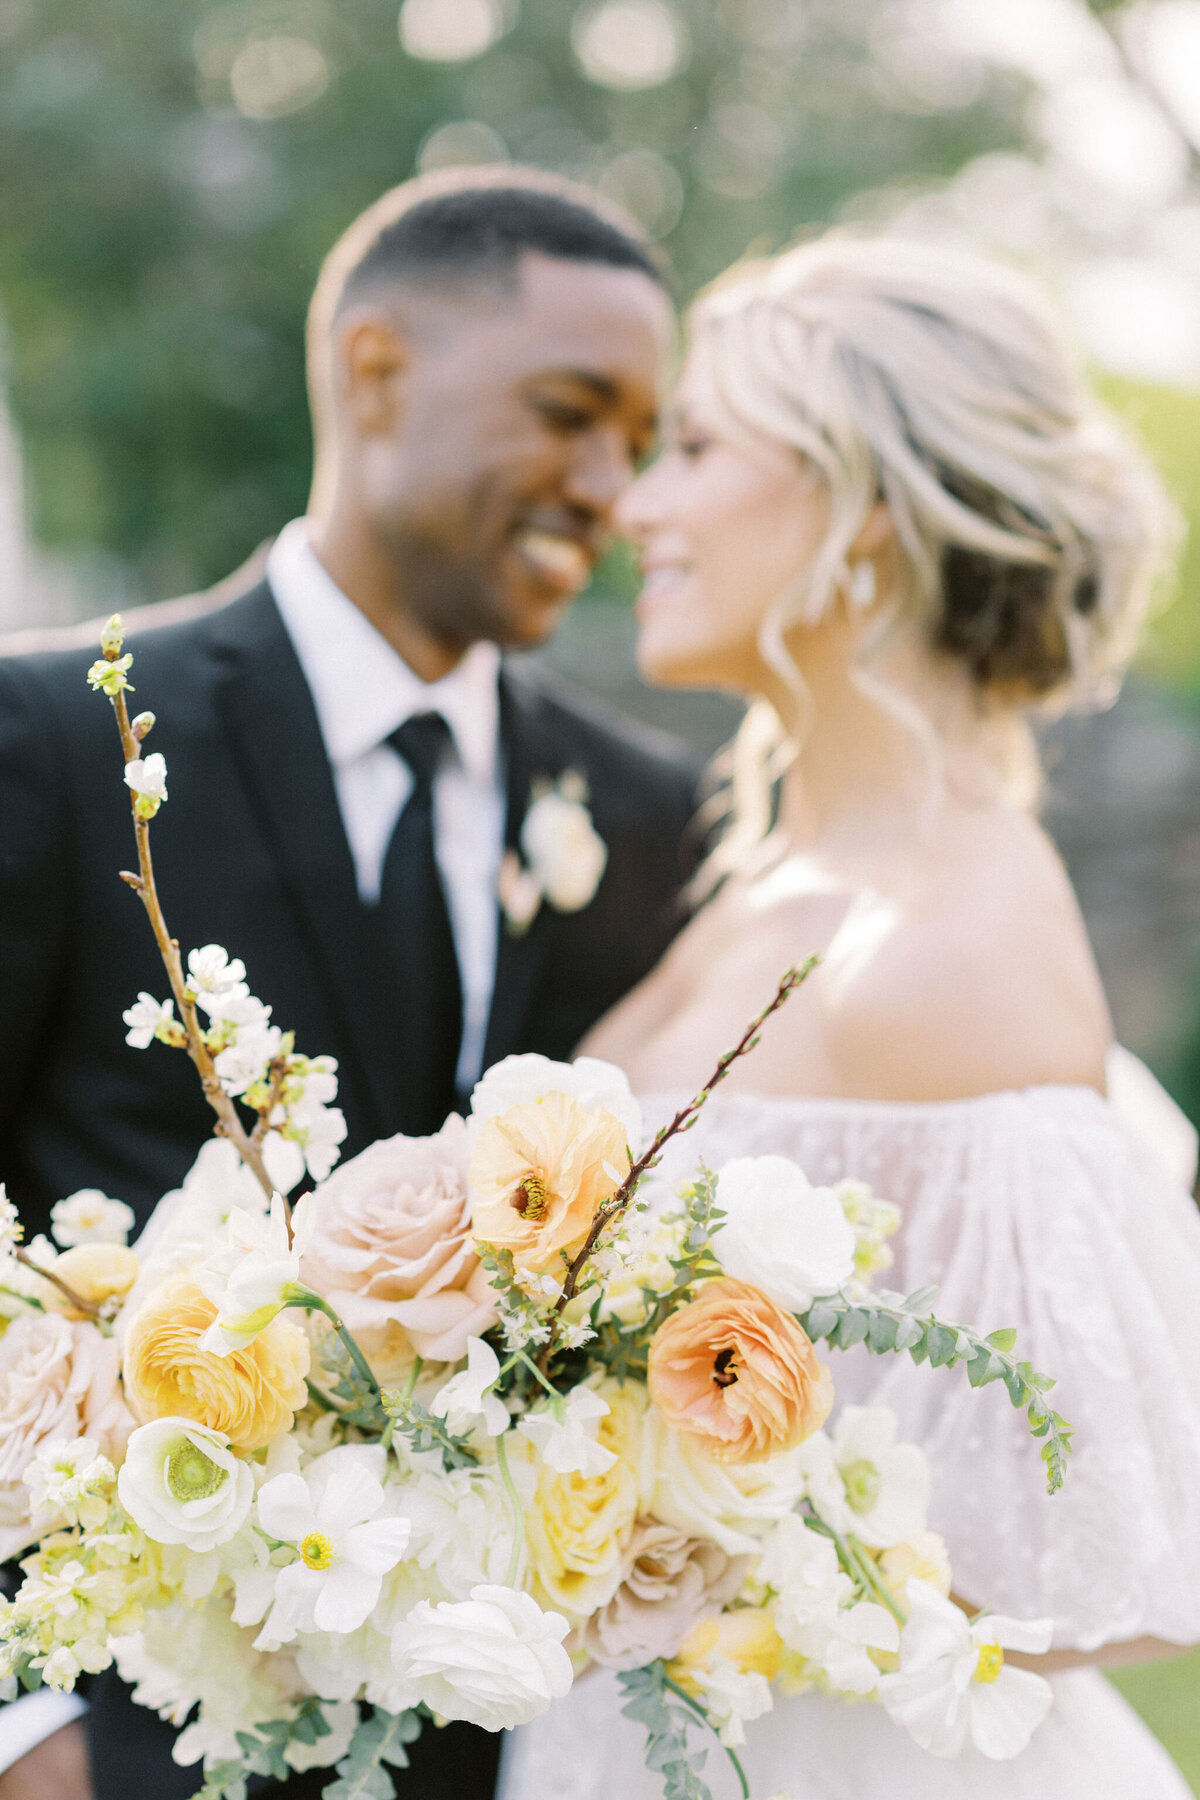 ct-wedding-florist-enza-events-bouquet